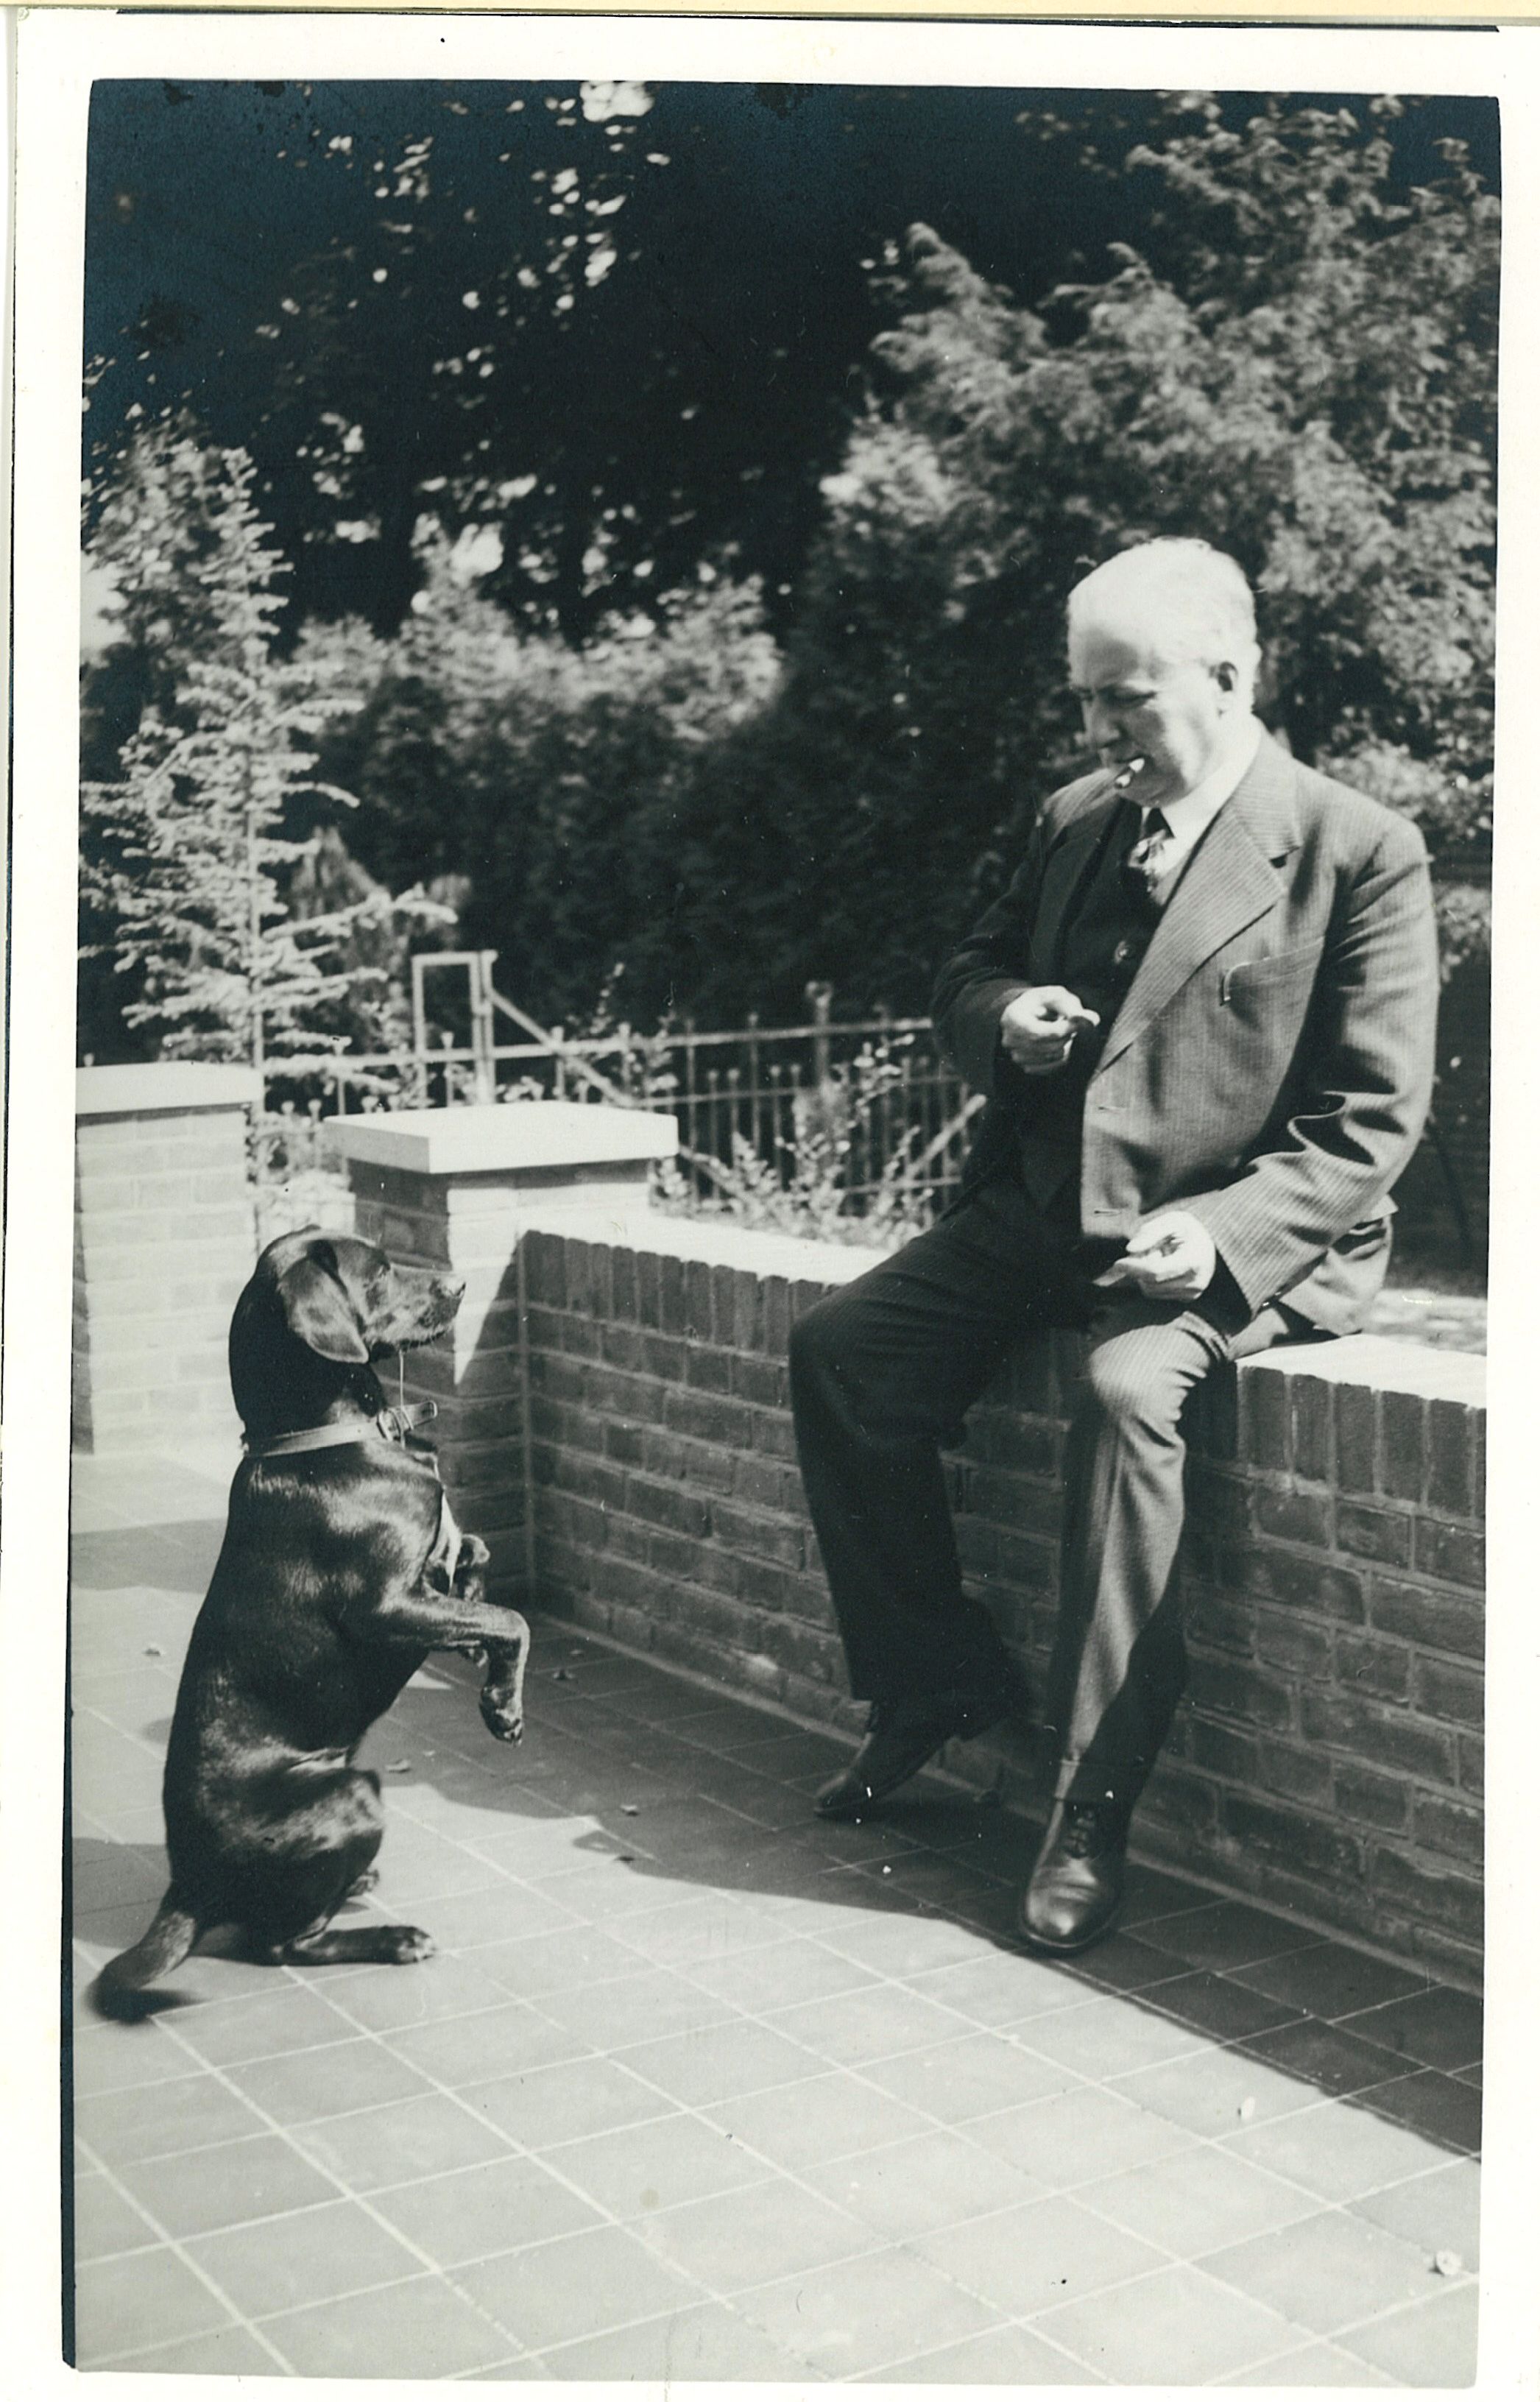 Privéfoto van Thomas Rosskopf met zijn hond